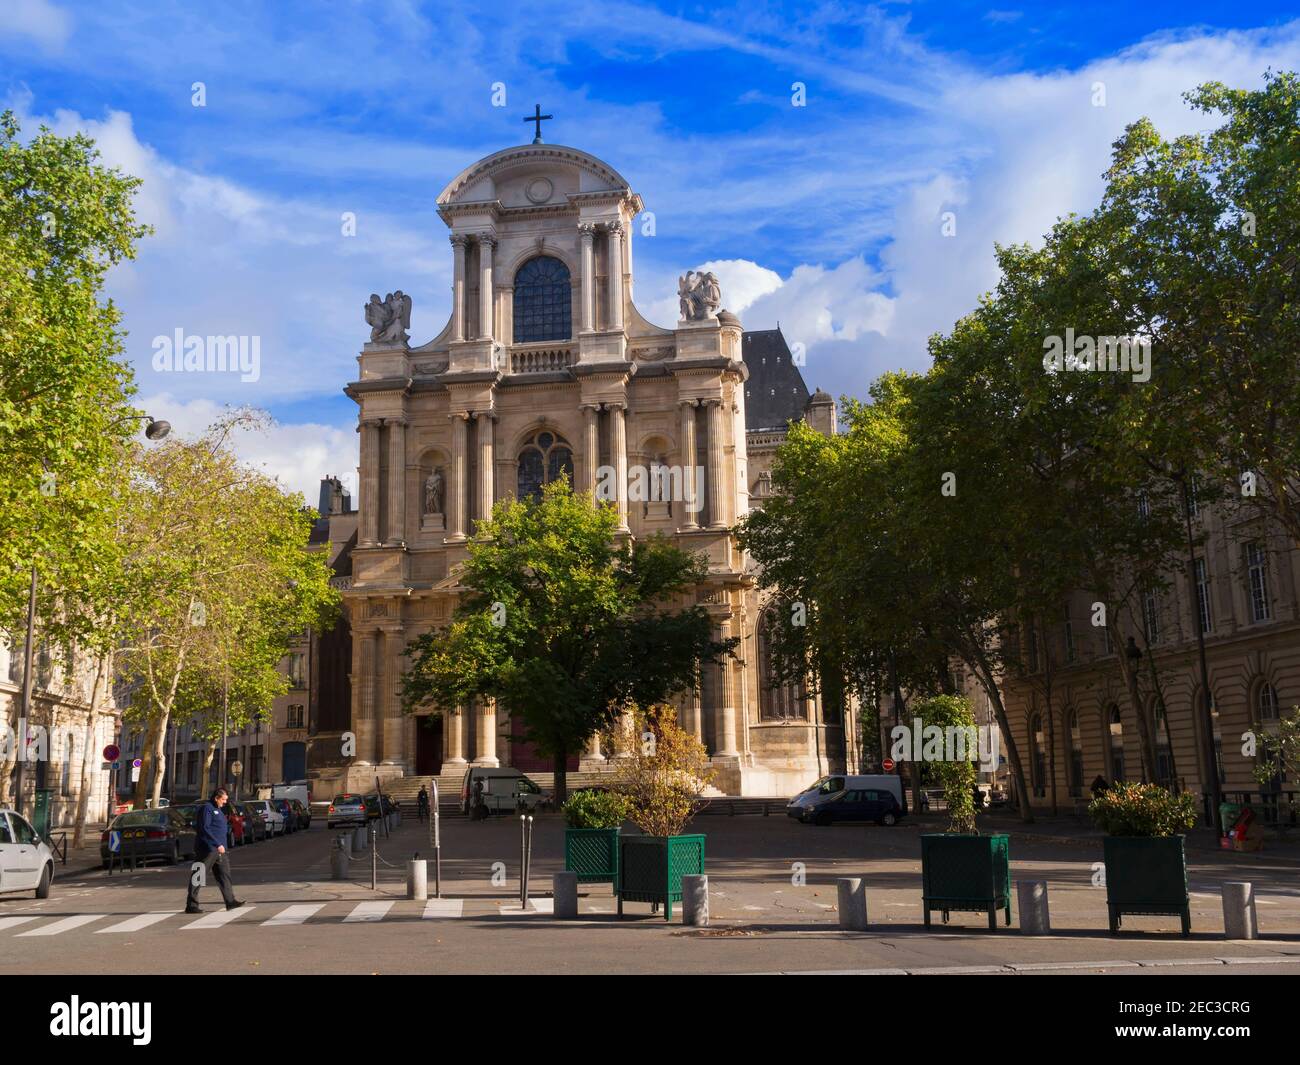 Chiesa di St-Gervais-et-St-Protais, Parigi. La chiesa è una delle più antiche di Parigi, iniziata nel 1494, anche se la facciata risale al 1620. La chiesa Foto Stock